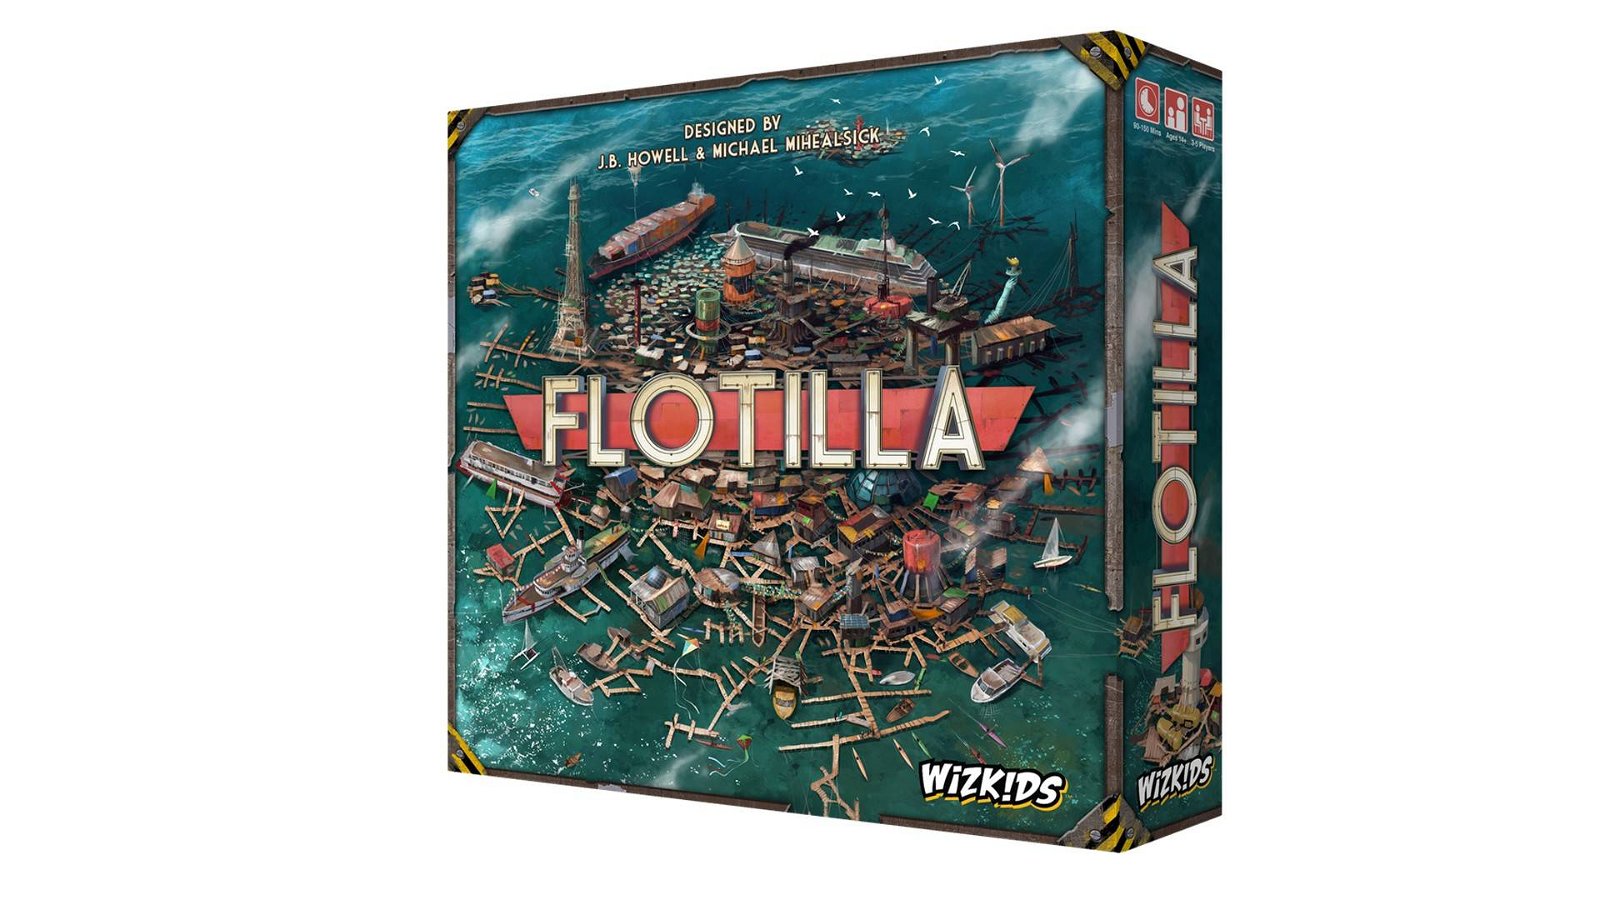 Immagine di Flotilla, il nuovo gioco da tavolo waterworld di Wizkids!